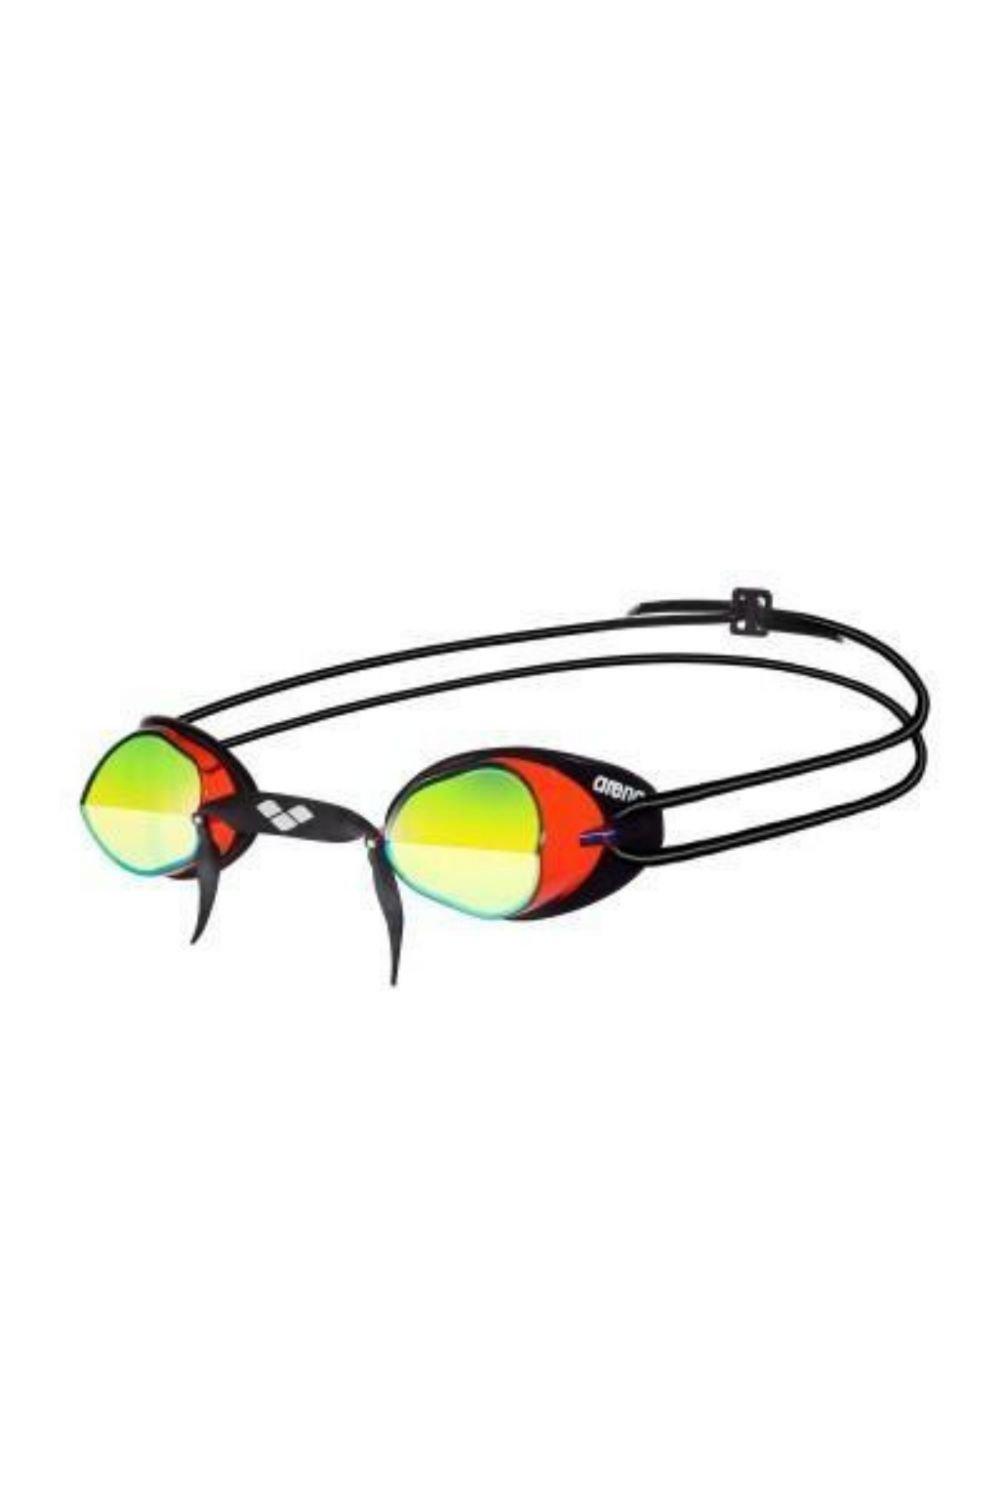 Очки для плавания Swedix Mirror - Зеркальные линзы Arena, красный очки для плавания стартовые arena swedix черные